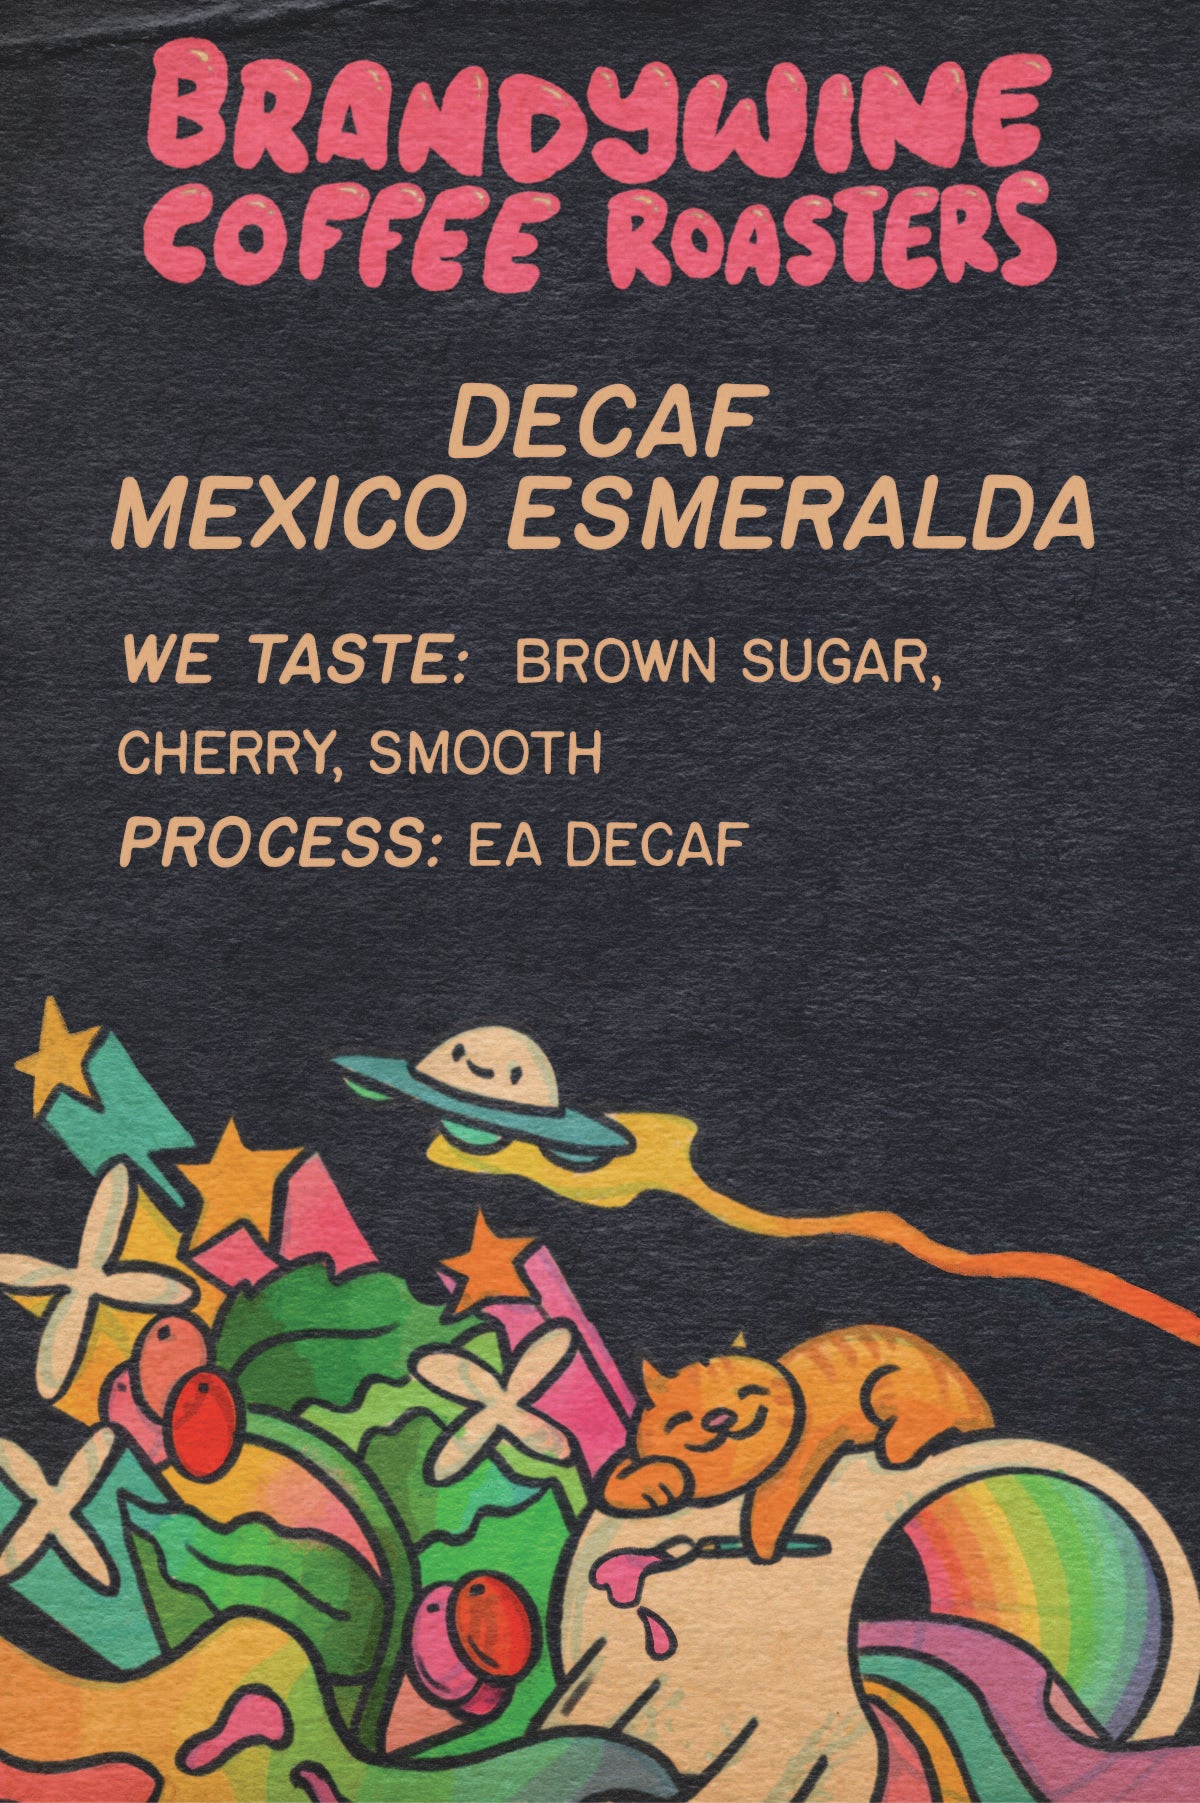 DECAF - Mexico - Esmeralda - EA Decaf